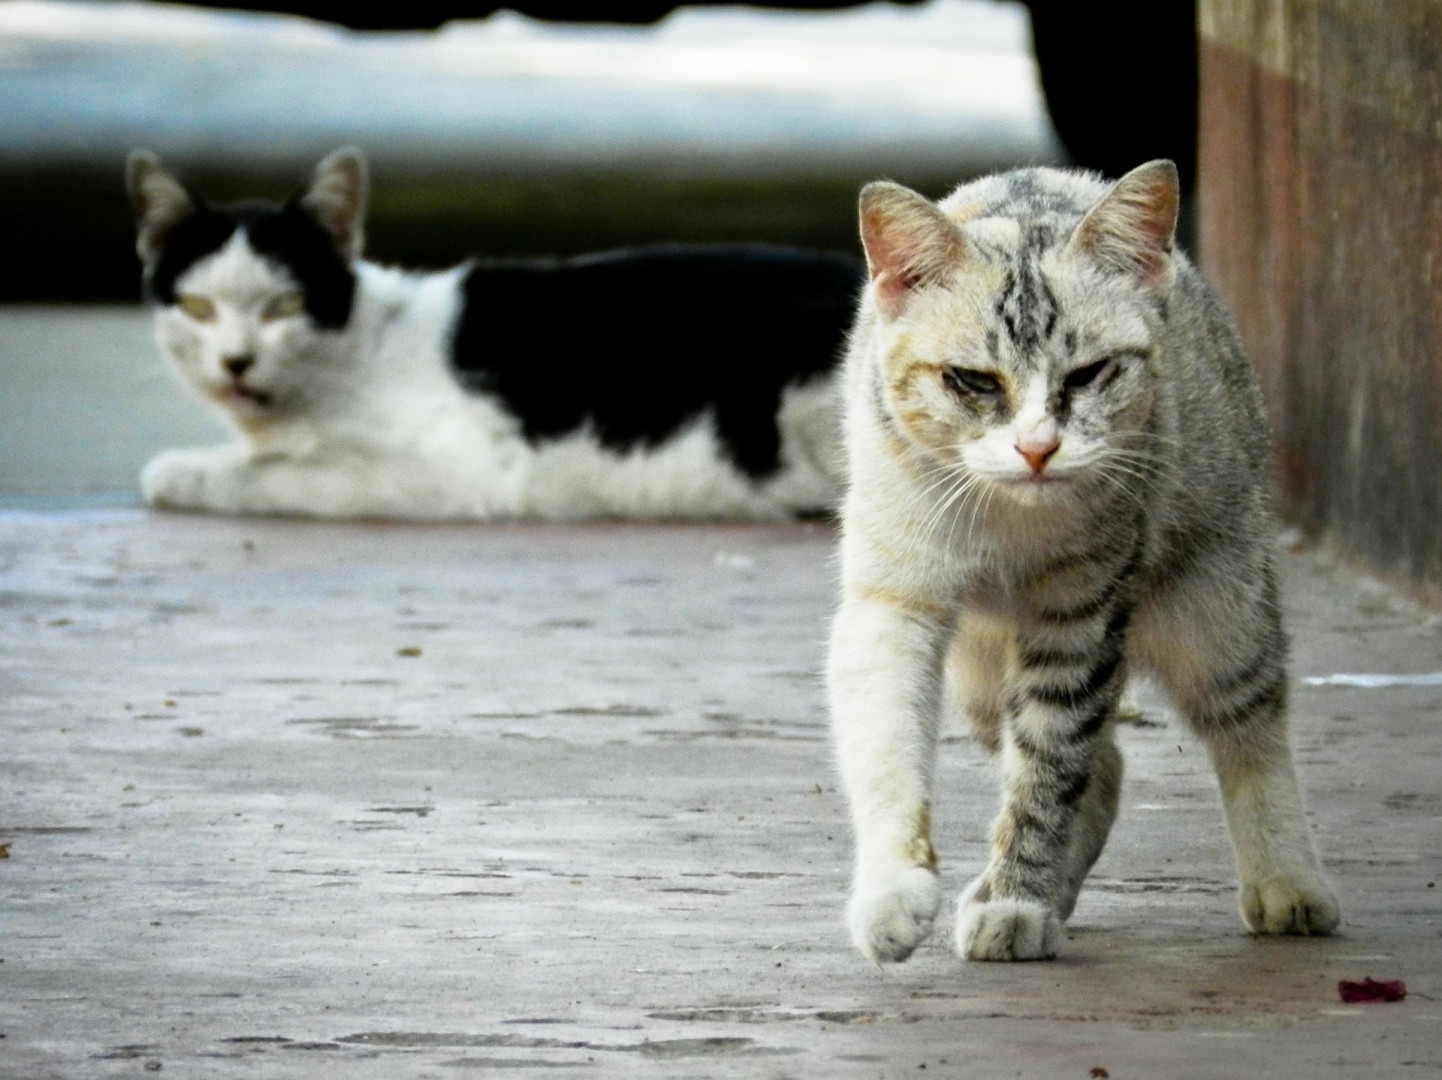 Na zdjęciu widać dwa szaro-białe koty, jeden idzie, drugi leży na ulicy